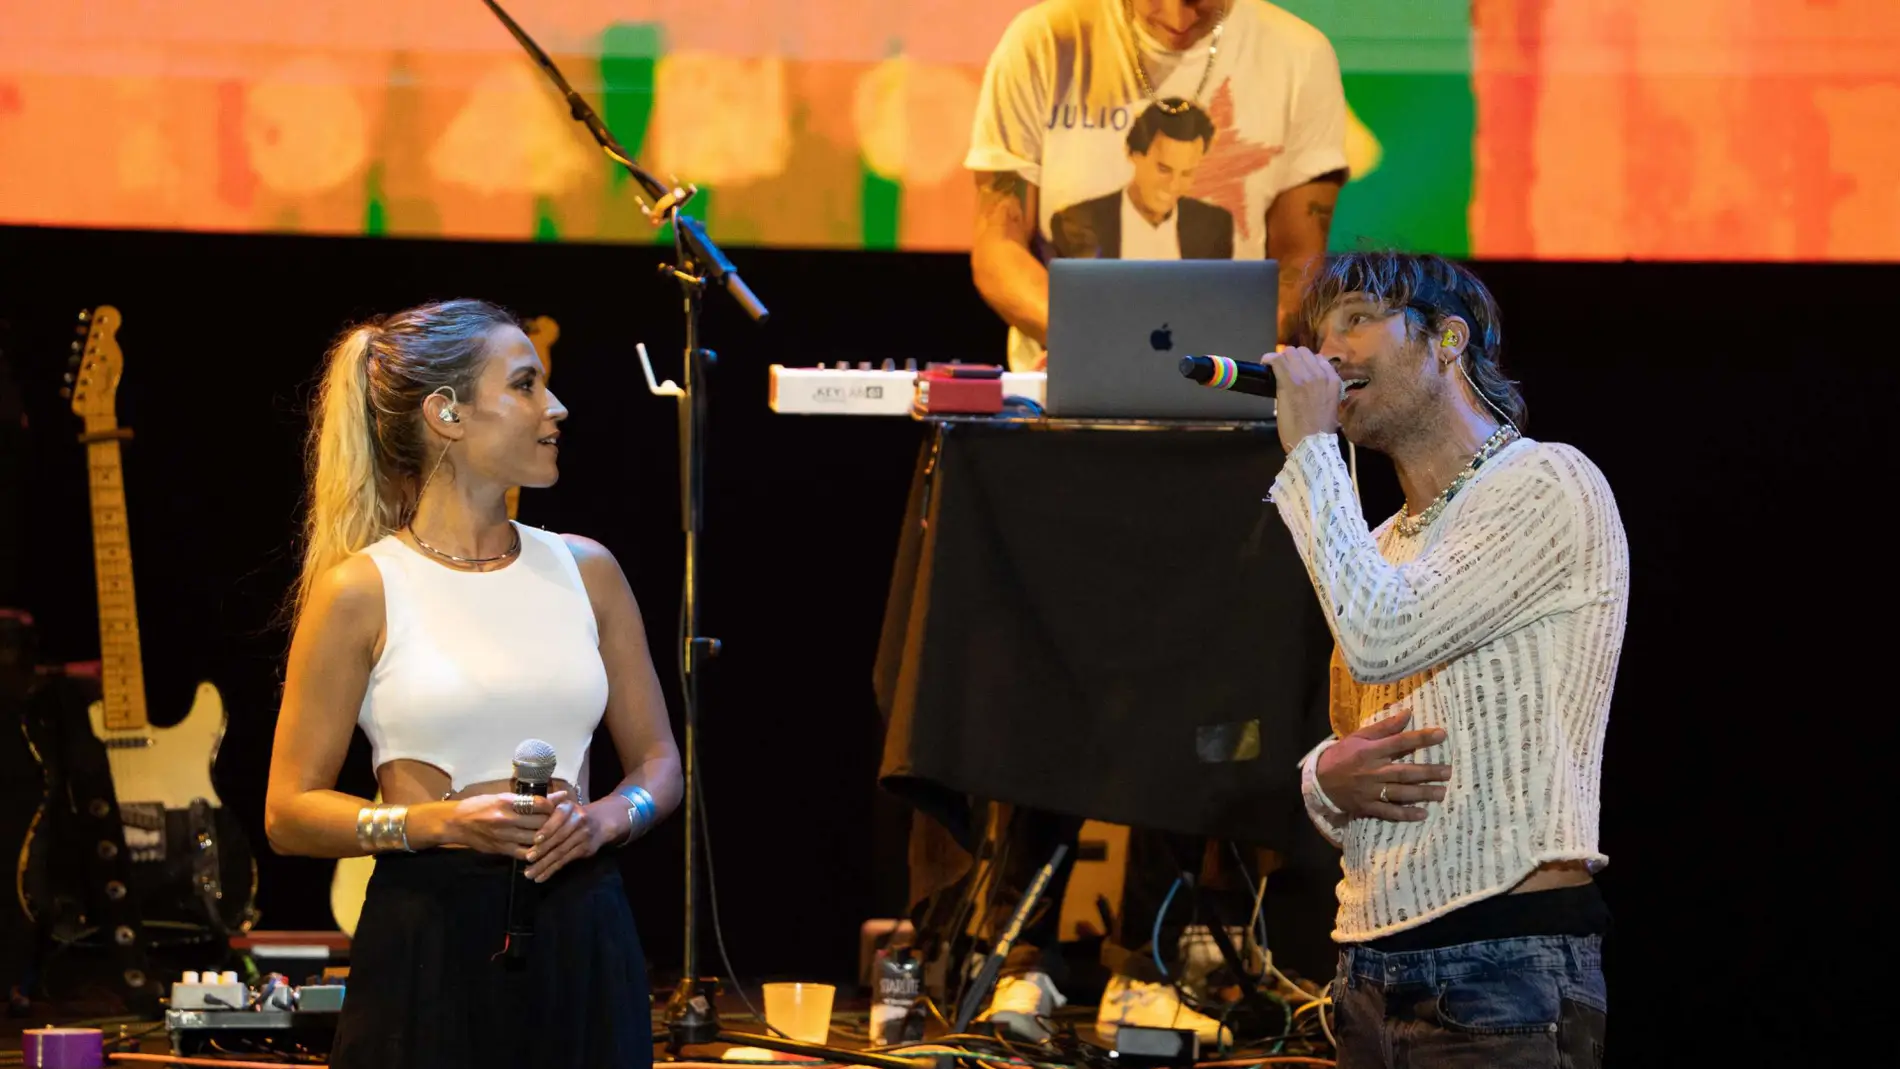 Ana Fernández sube al escenario a cantar con su novio, Adrián Roma (Marlon) en Marbella 